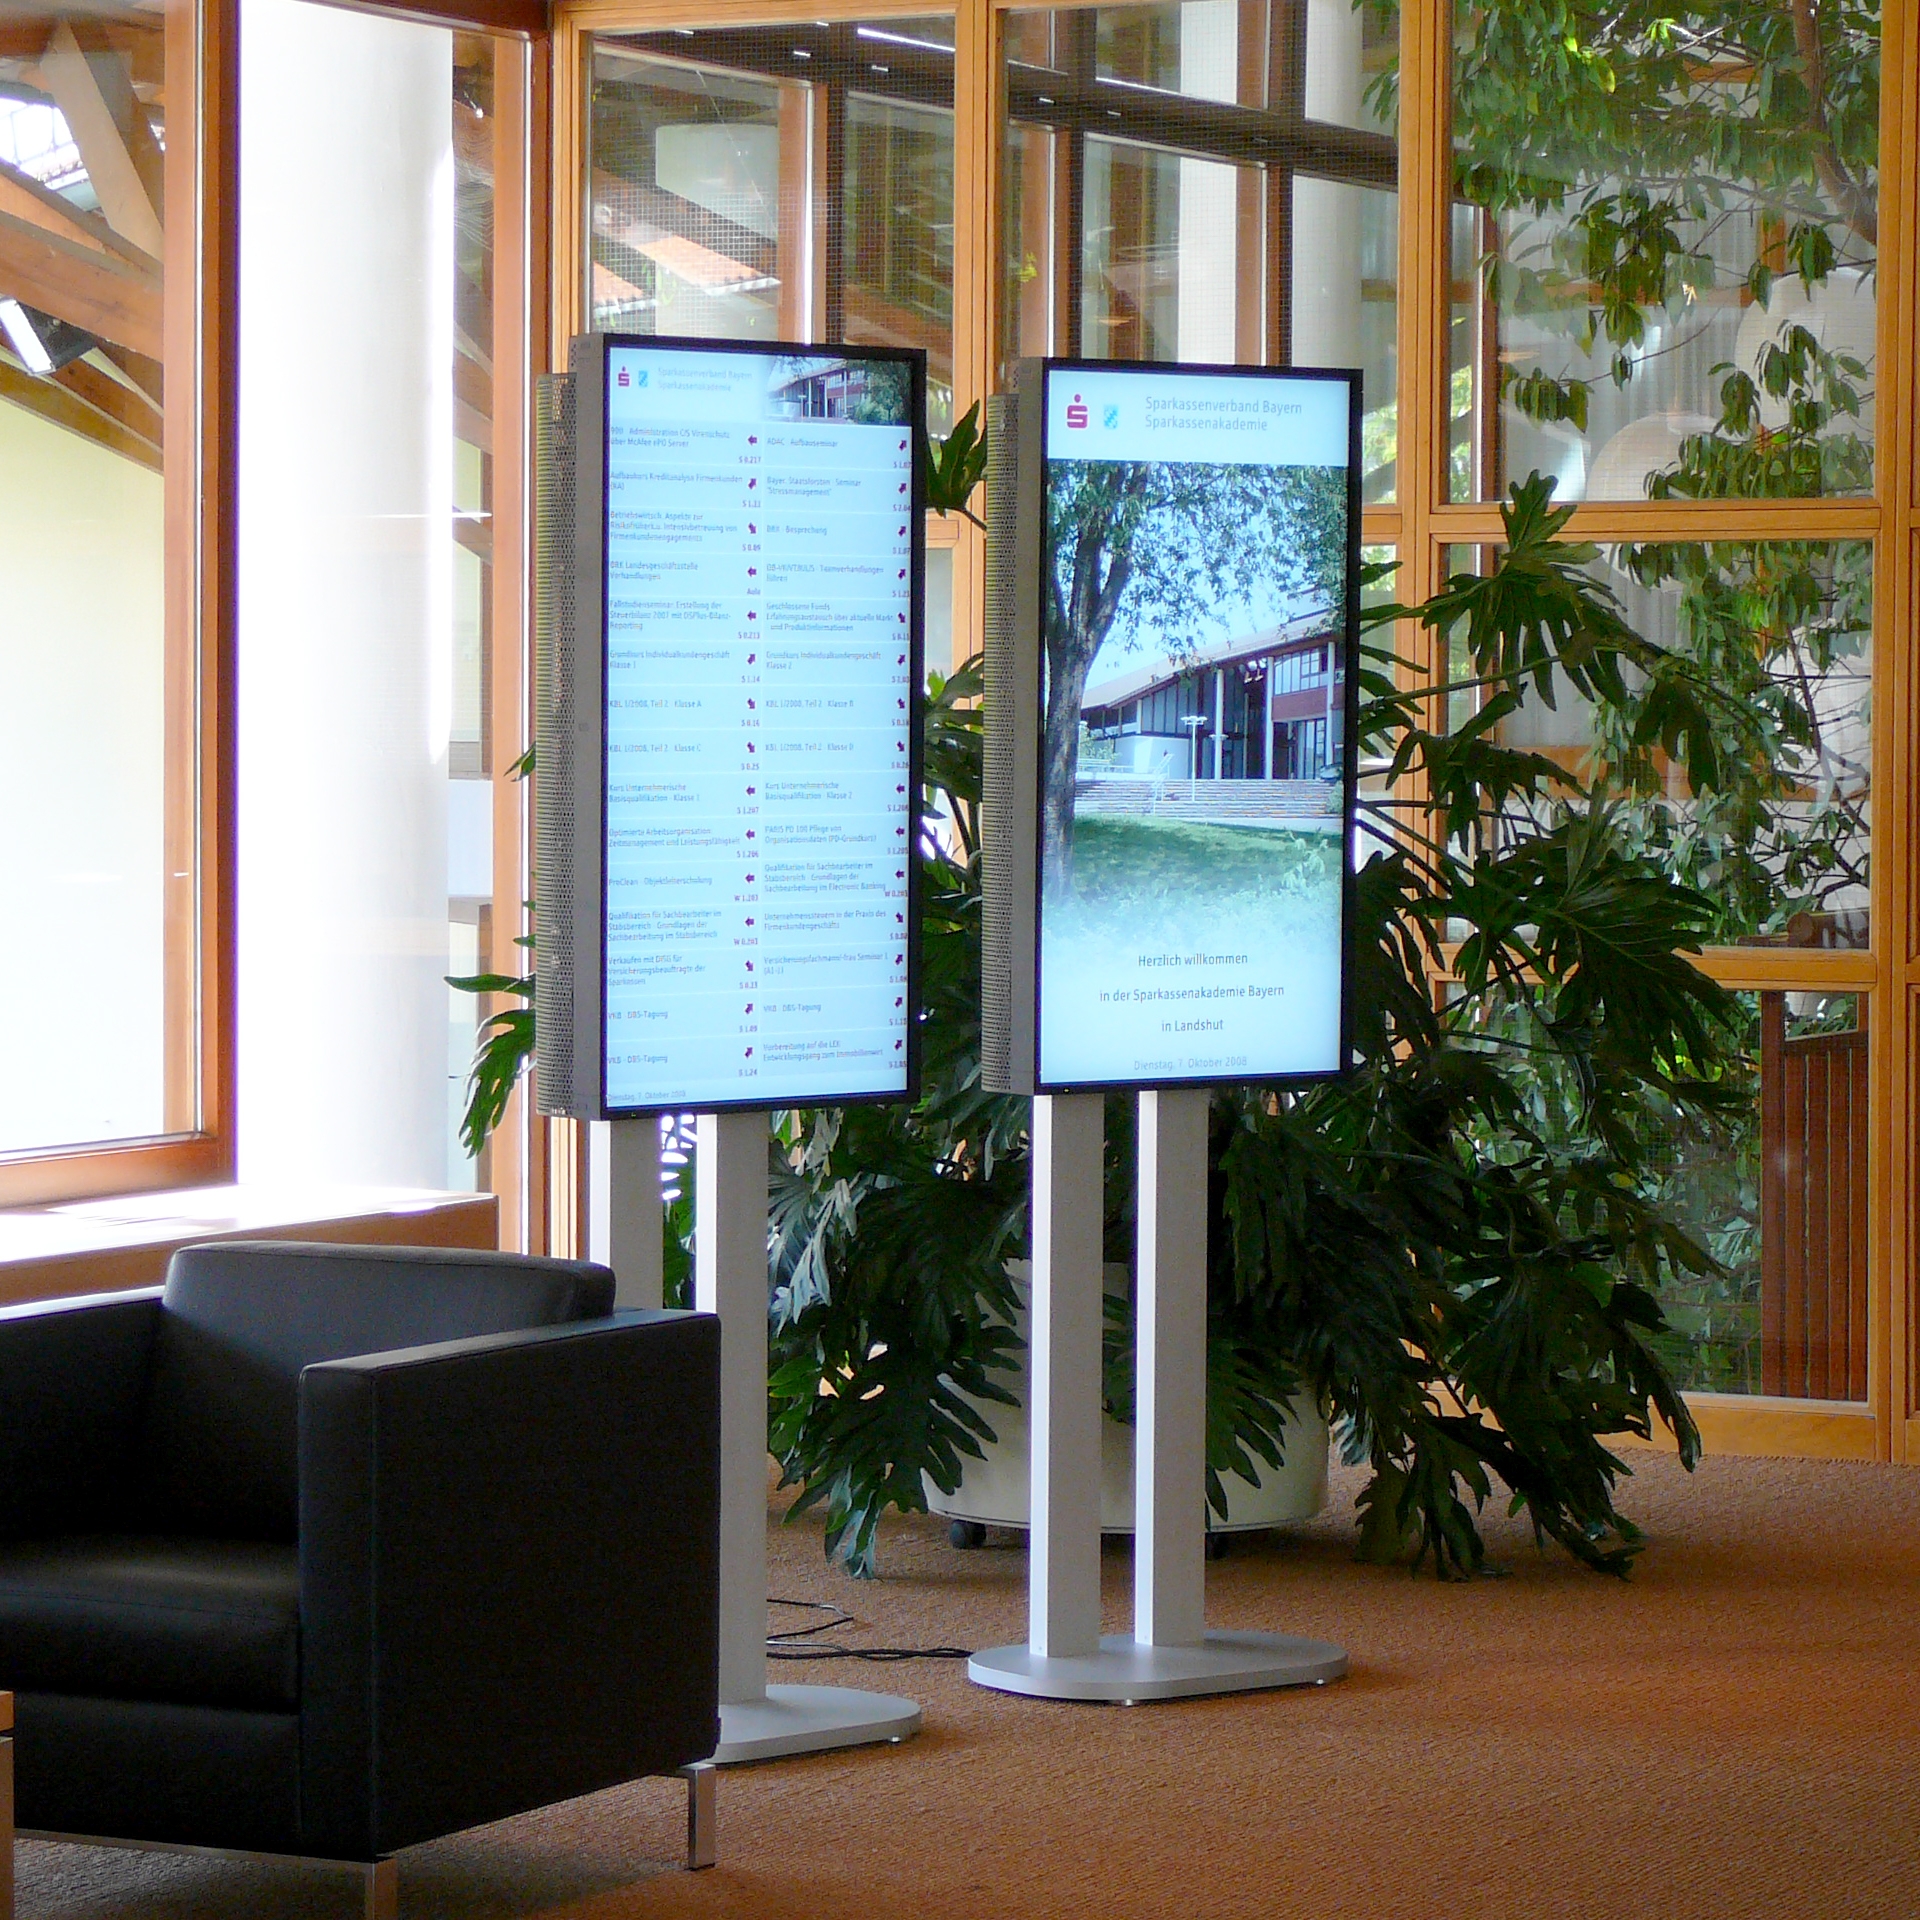 Public Displays in the Sparkassenakademie Landshut